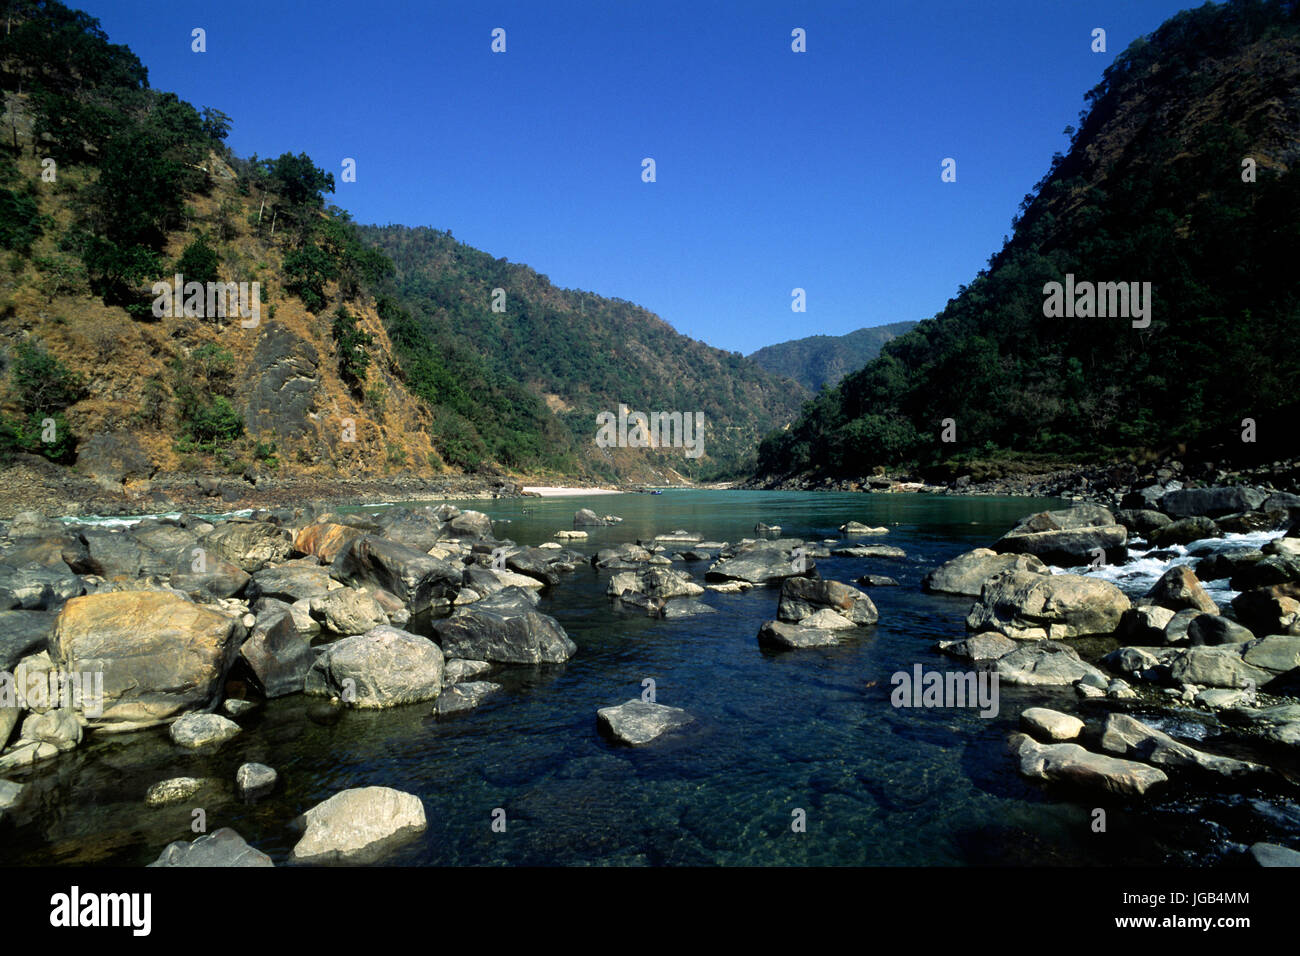 Indien, Uttarakhand, Ganges nördlich von Rishikesh Stockfoto